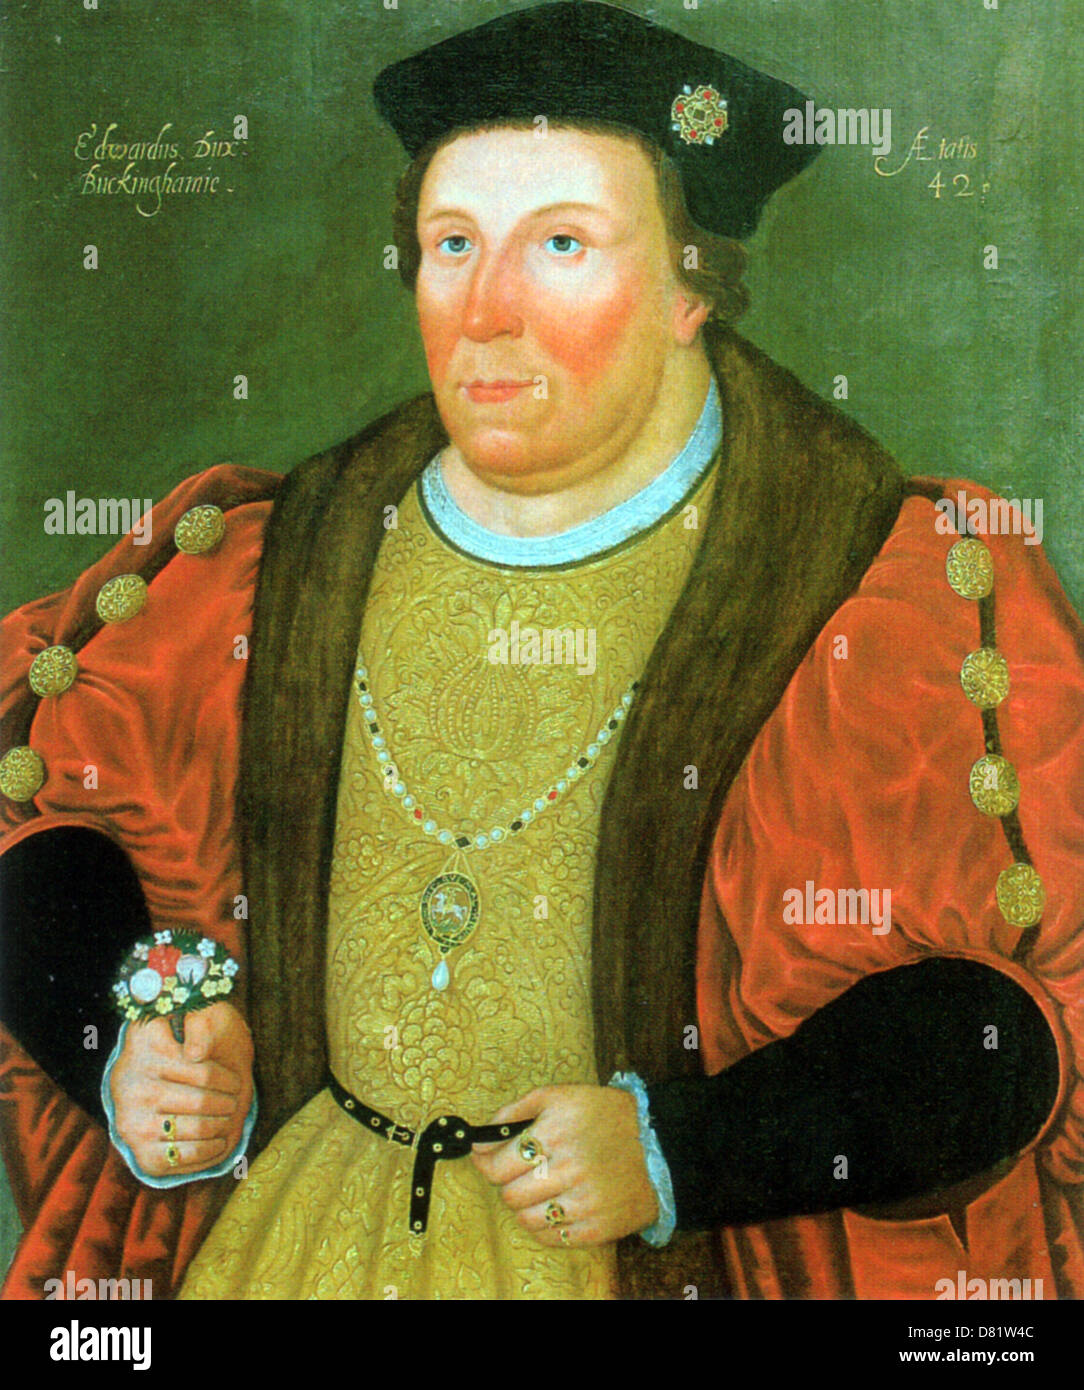 EDWARD STAFFORD, 3 duc de Buckingham (1478-1521), gentilhomme anglais exécuté pour trahison en vertu de l'Henry VIII, peint en 1520 Banque D'Images